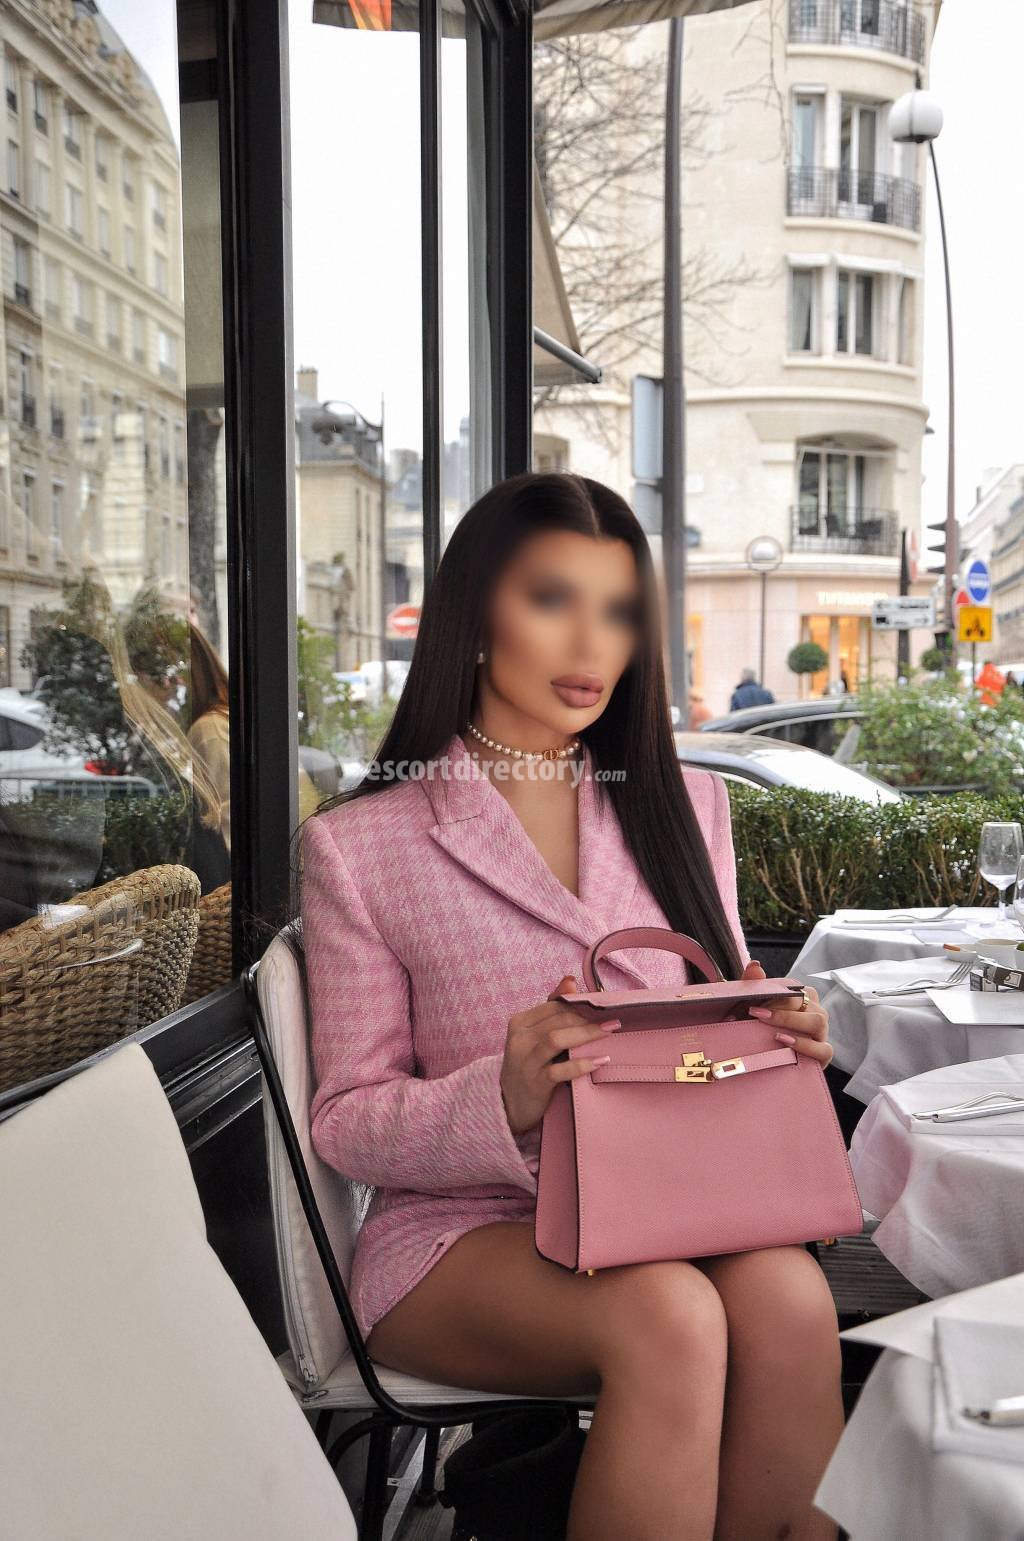 Ayah-Bella Vip Escort escort in Paris offers Pipe sans capote services